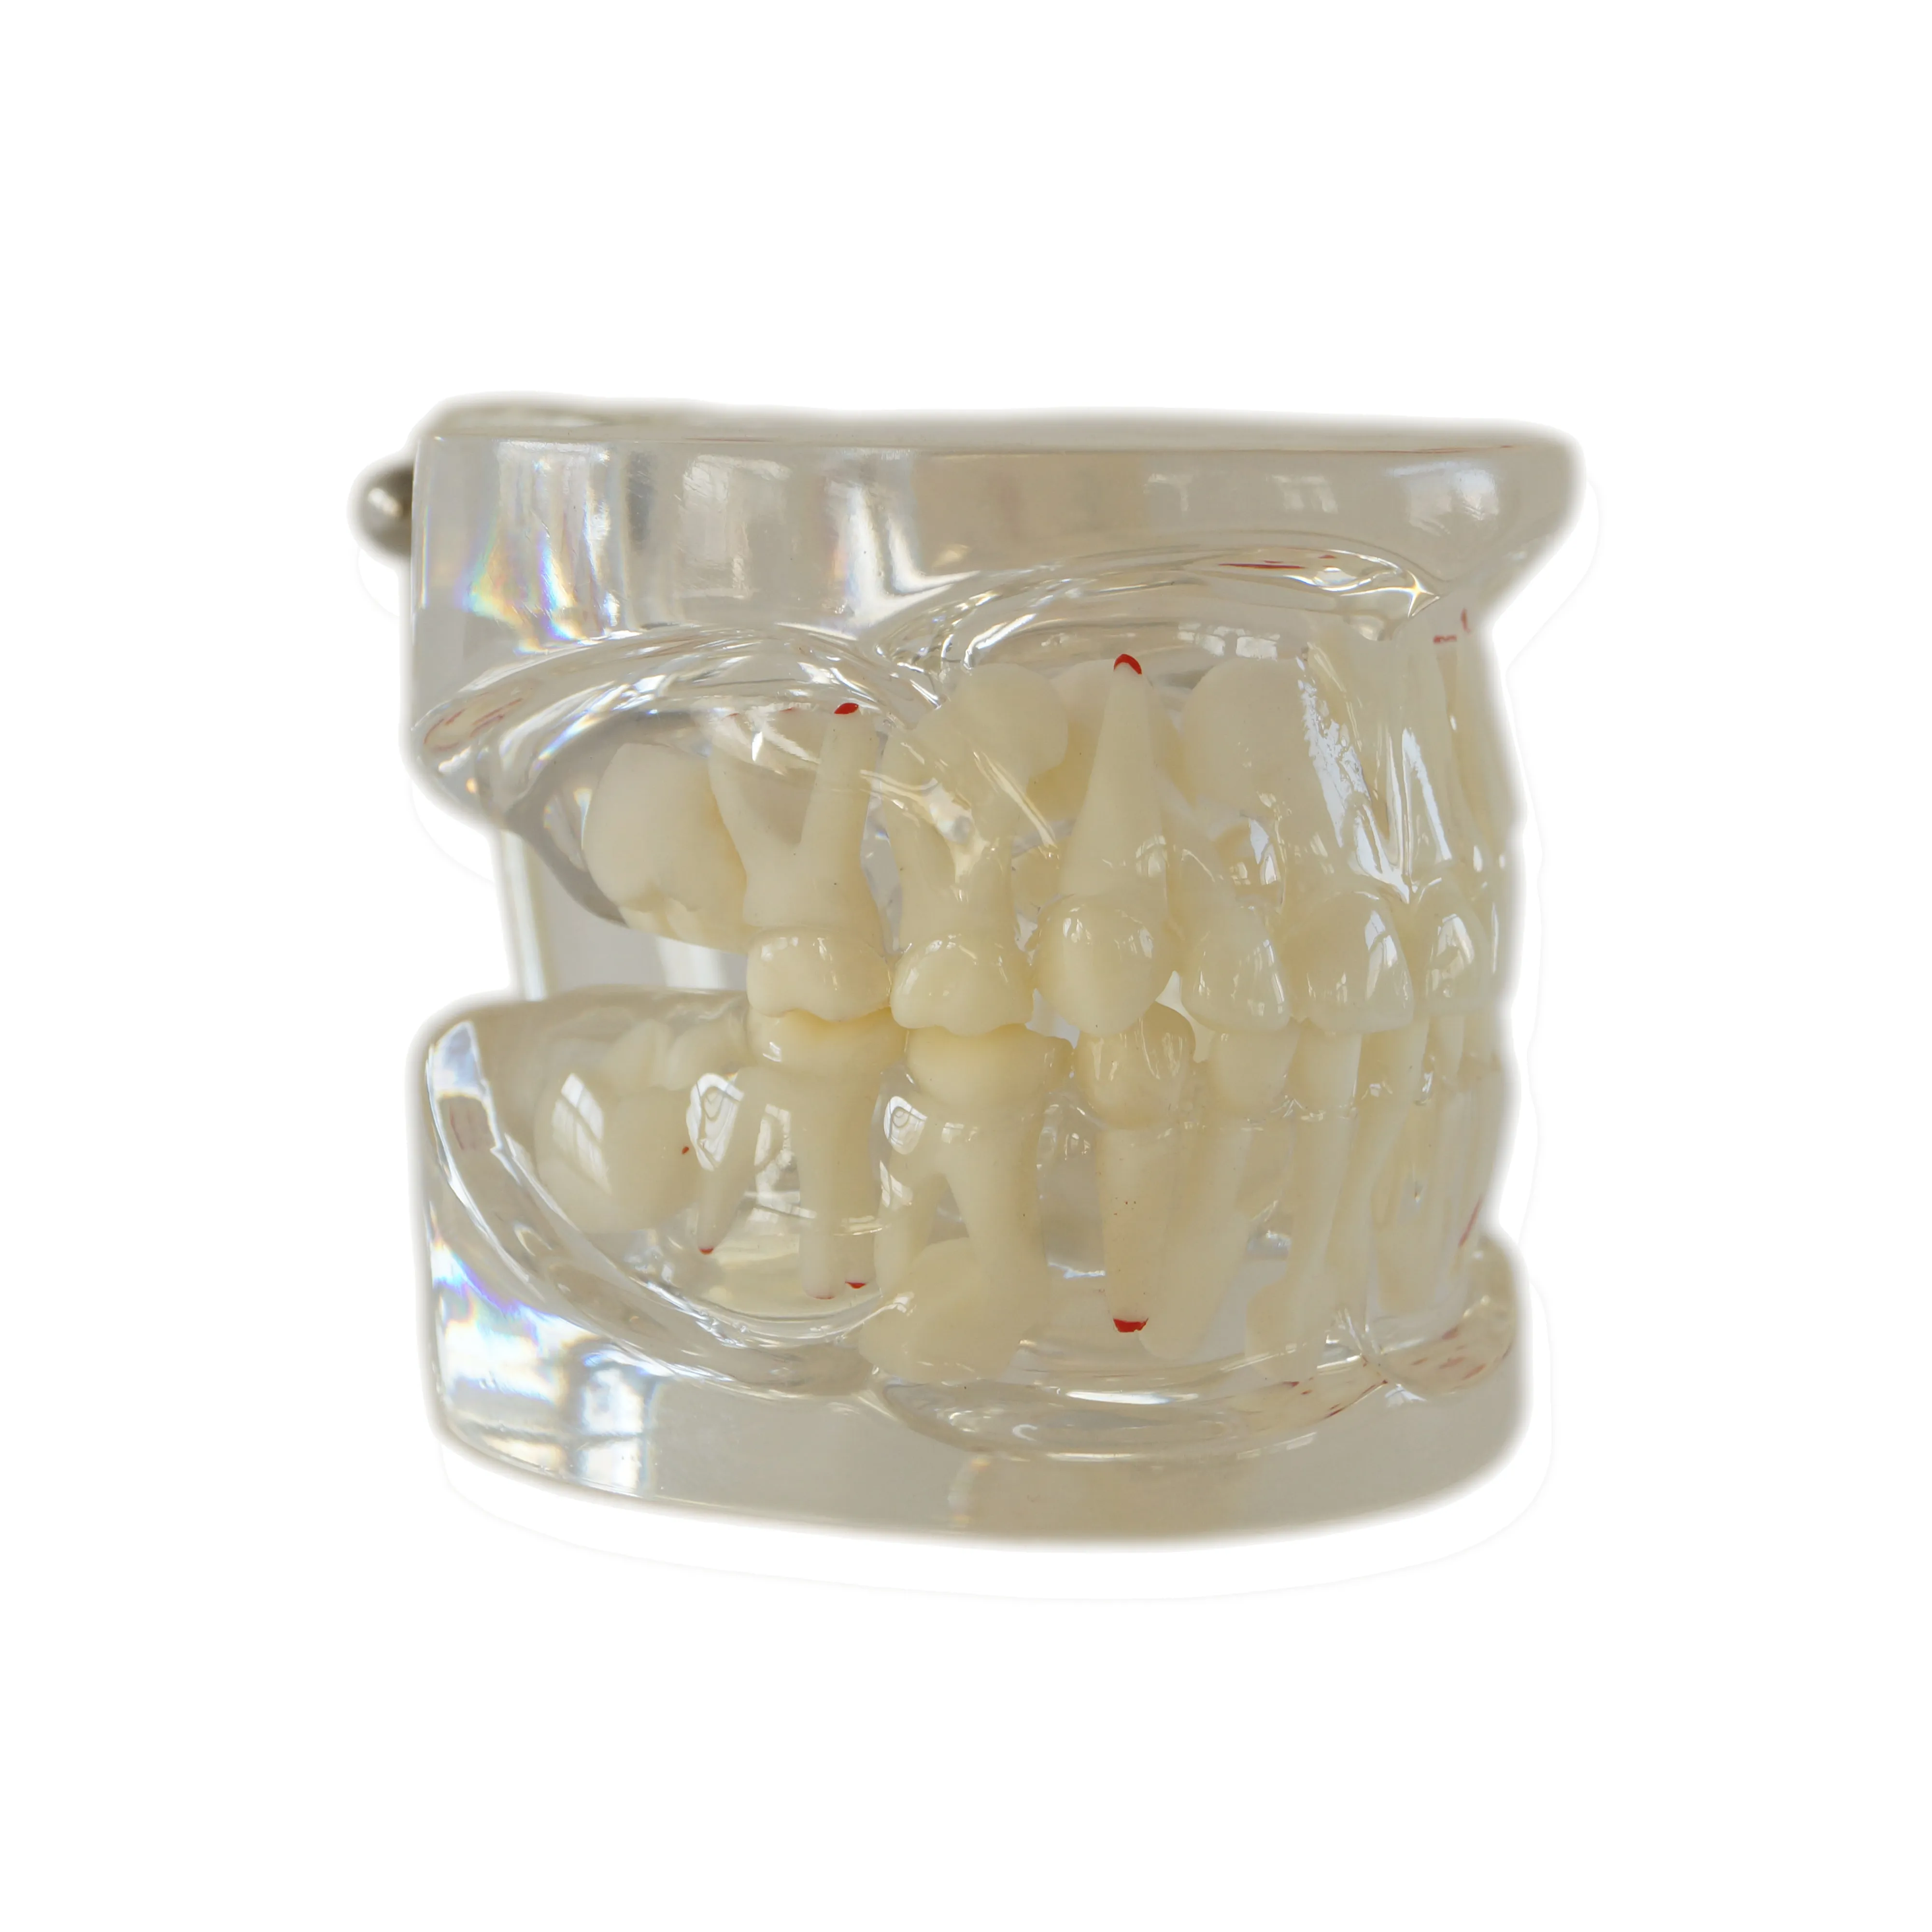 Modelo dentário leite-constante alternativa modelo pathológico, cabine de reparação polpa dental e vedação de segurança